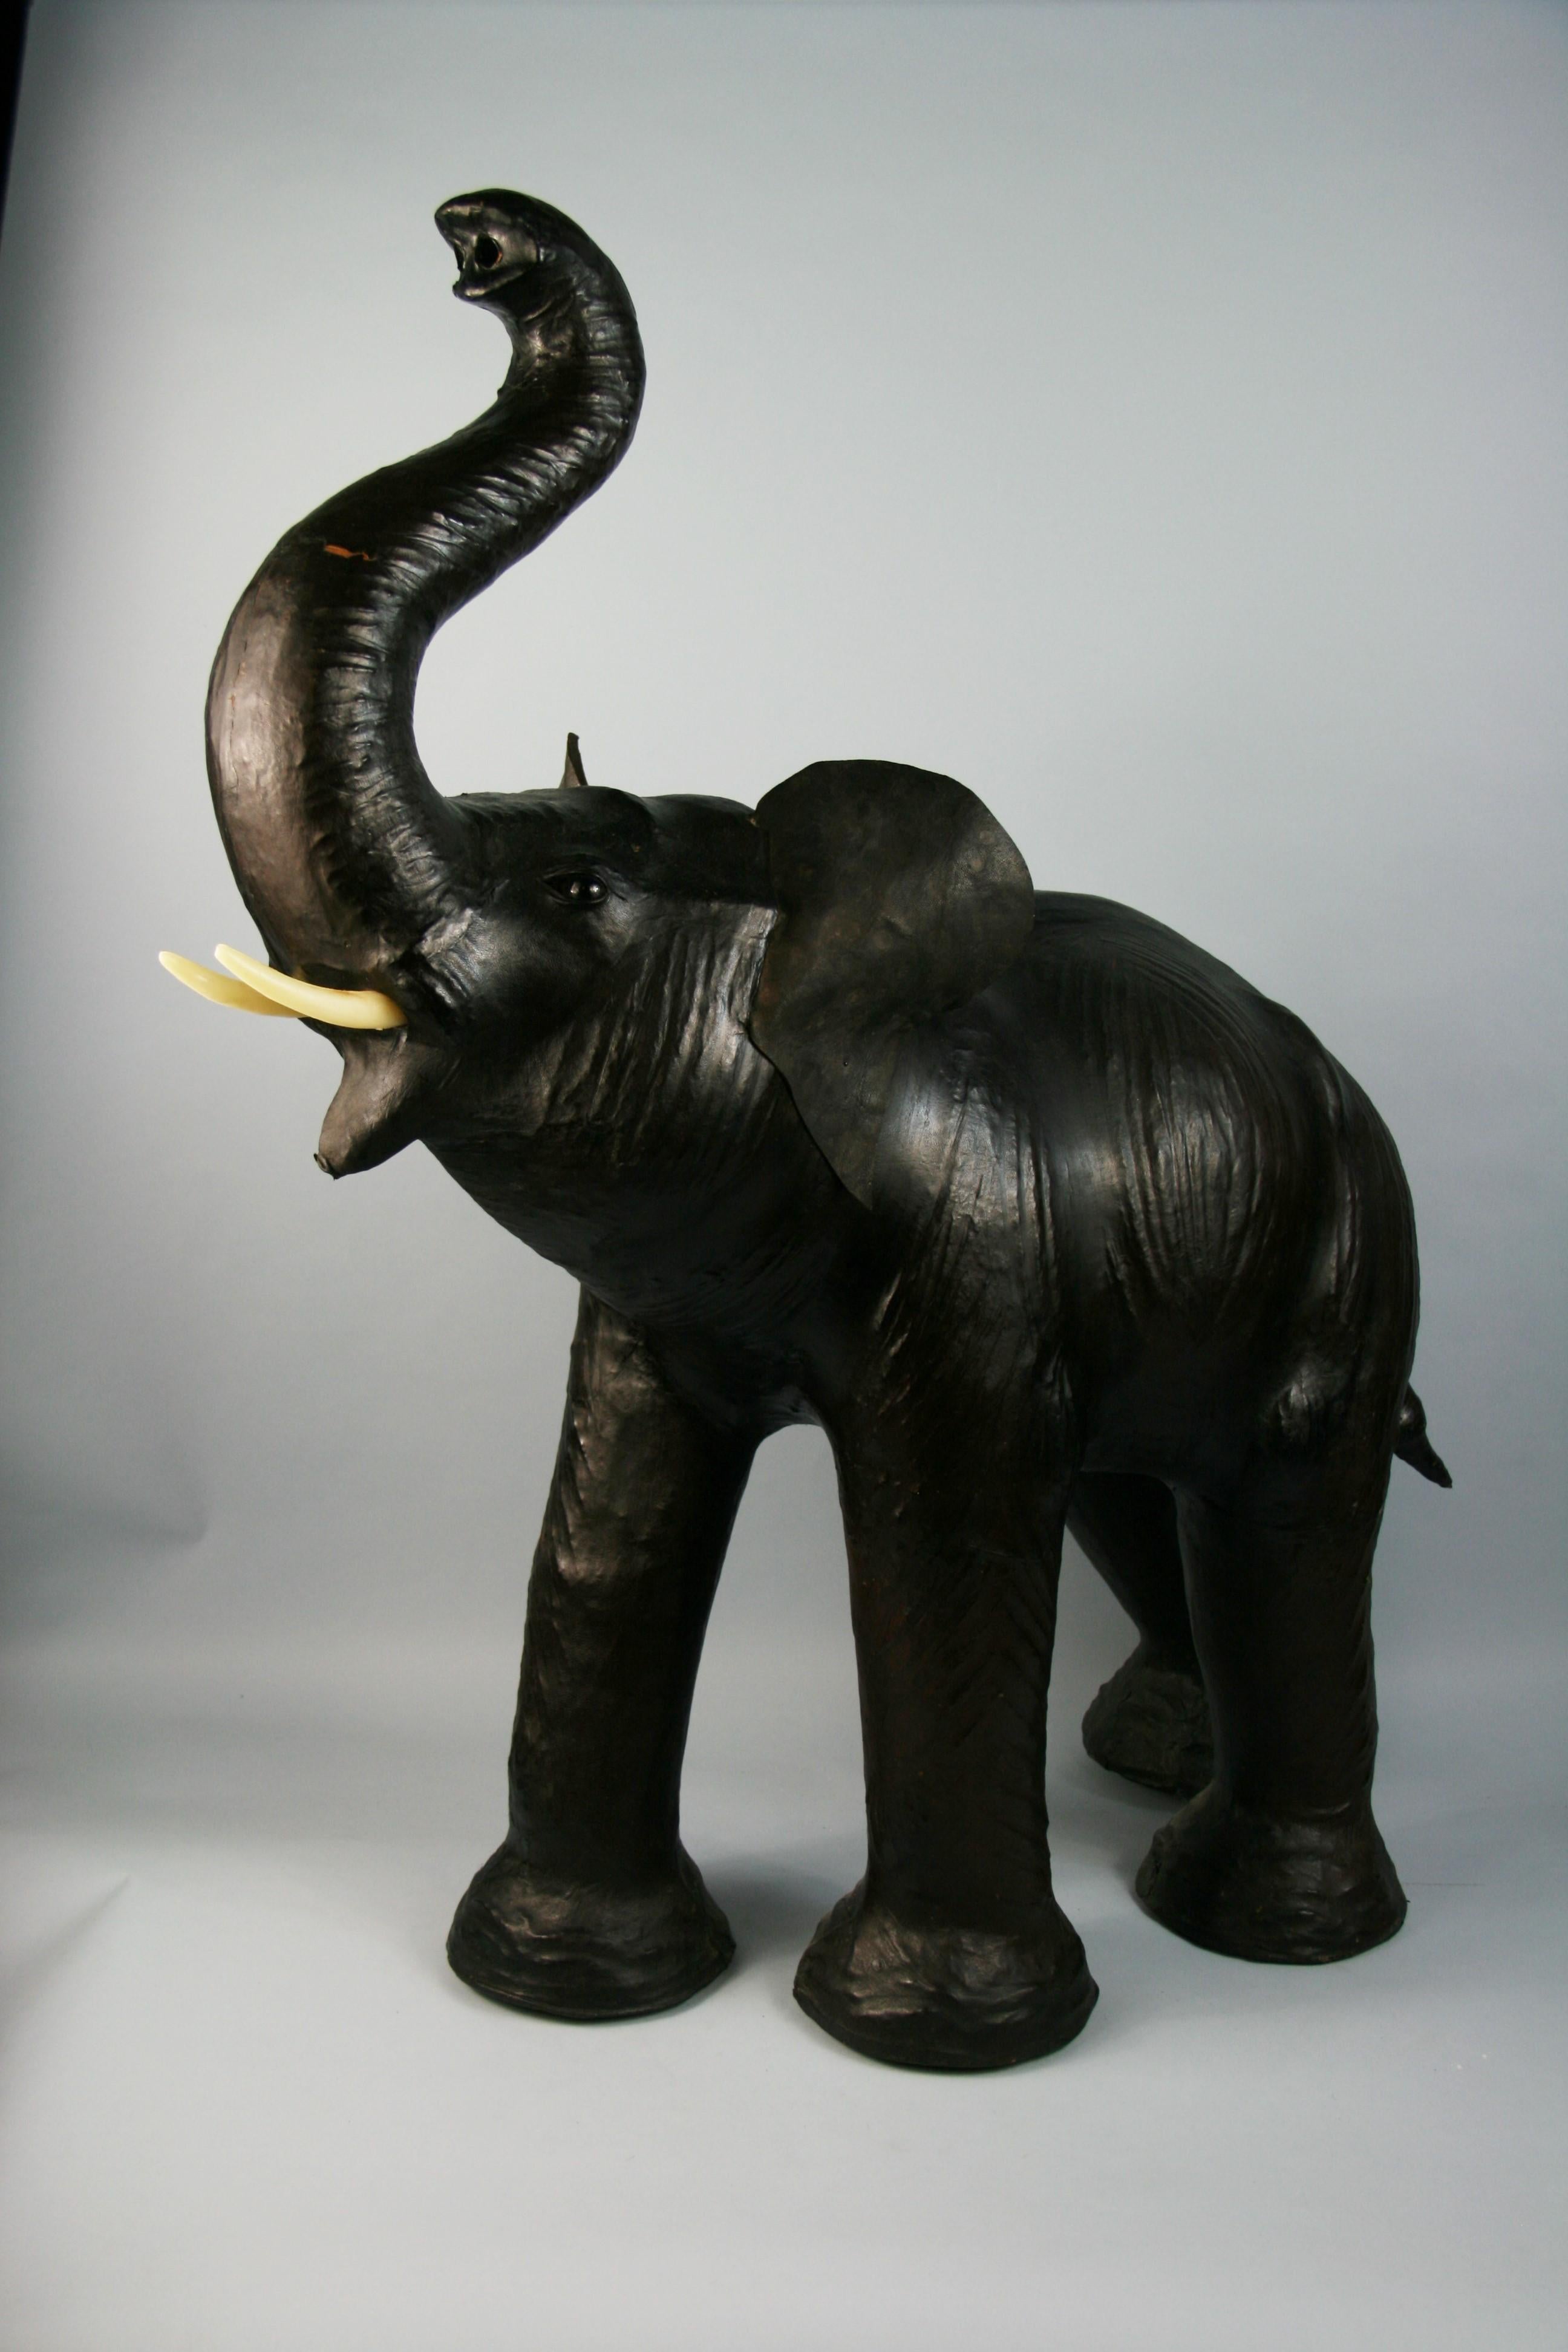 Elephant Foot Stool - 2 For Sale on 1stDibs | elephant foot chair, elephant  leg stool, real elephant foot stool value